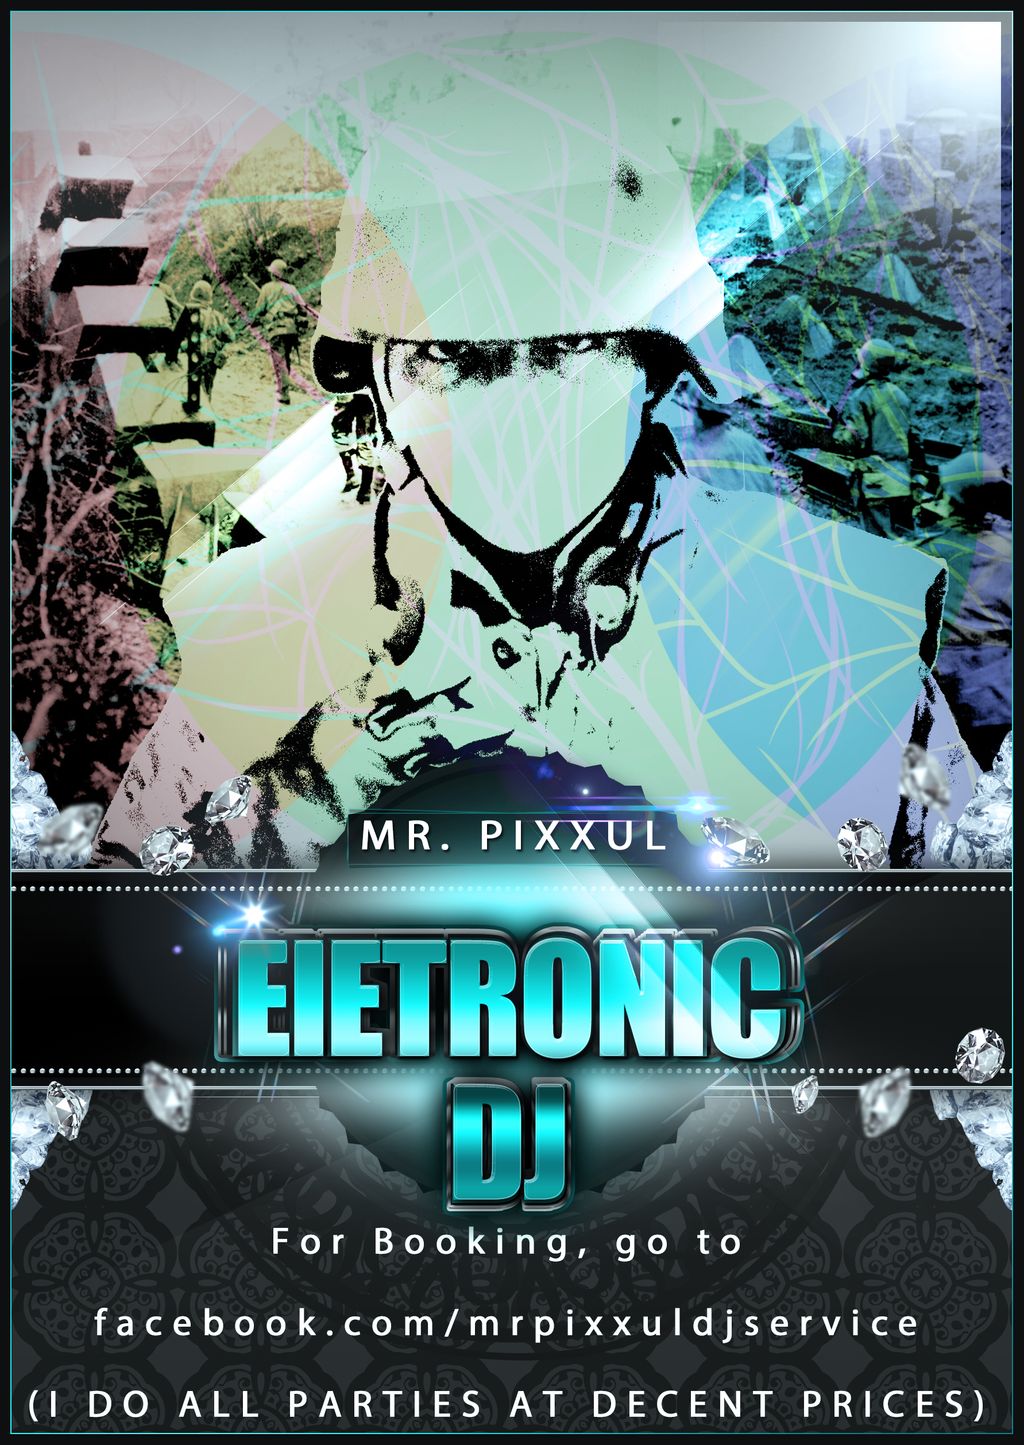 Mr. Pixxuls DJ Service